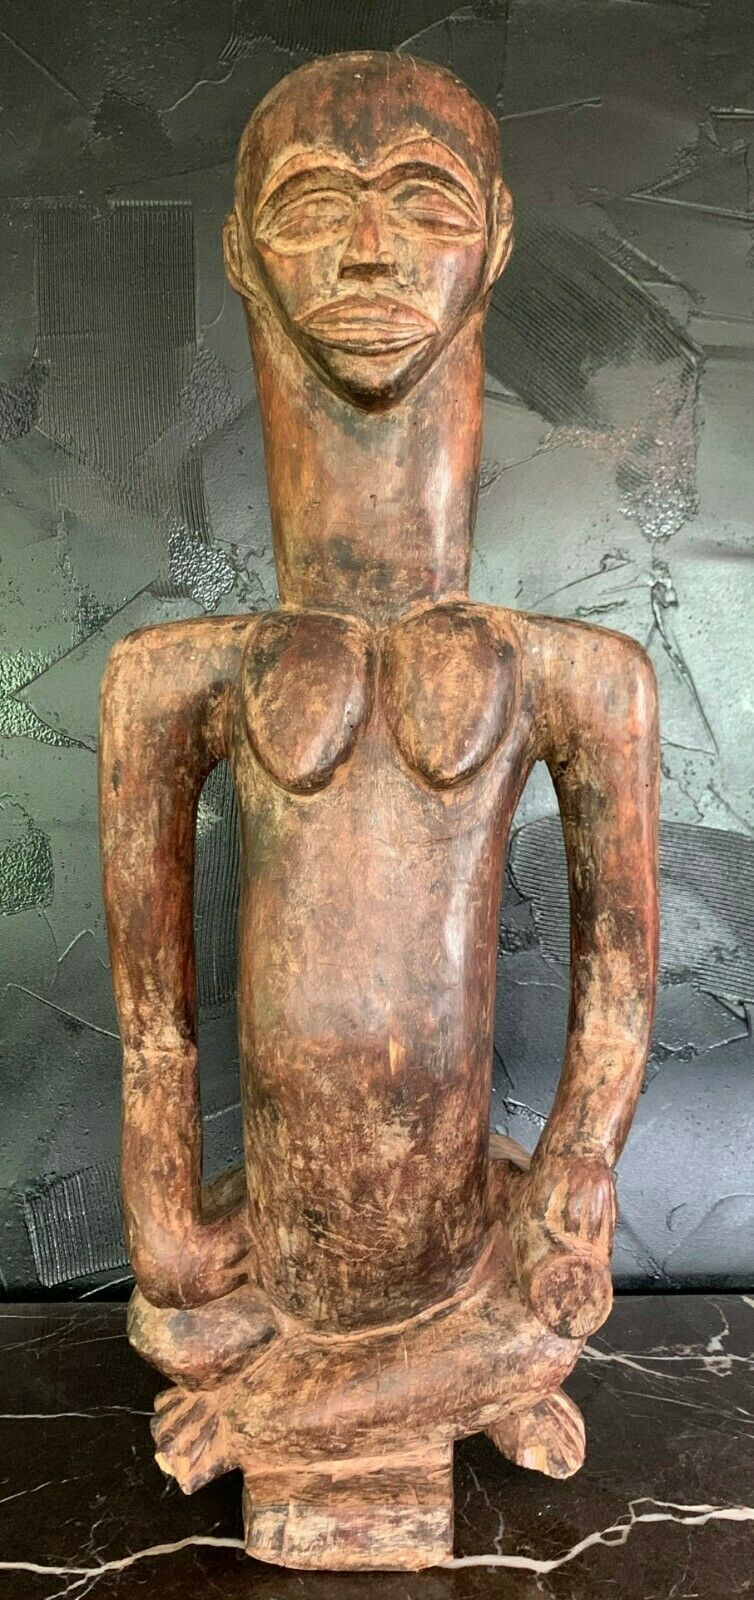 Vintage Primitive African Baule Wood Carved Figure Table Sculpture Man